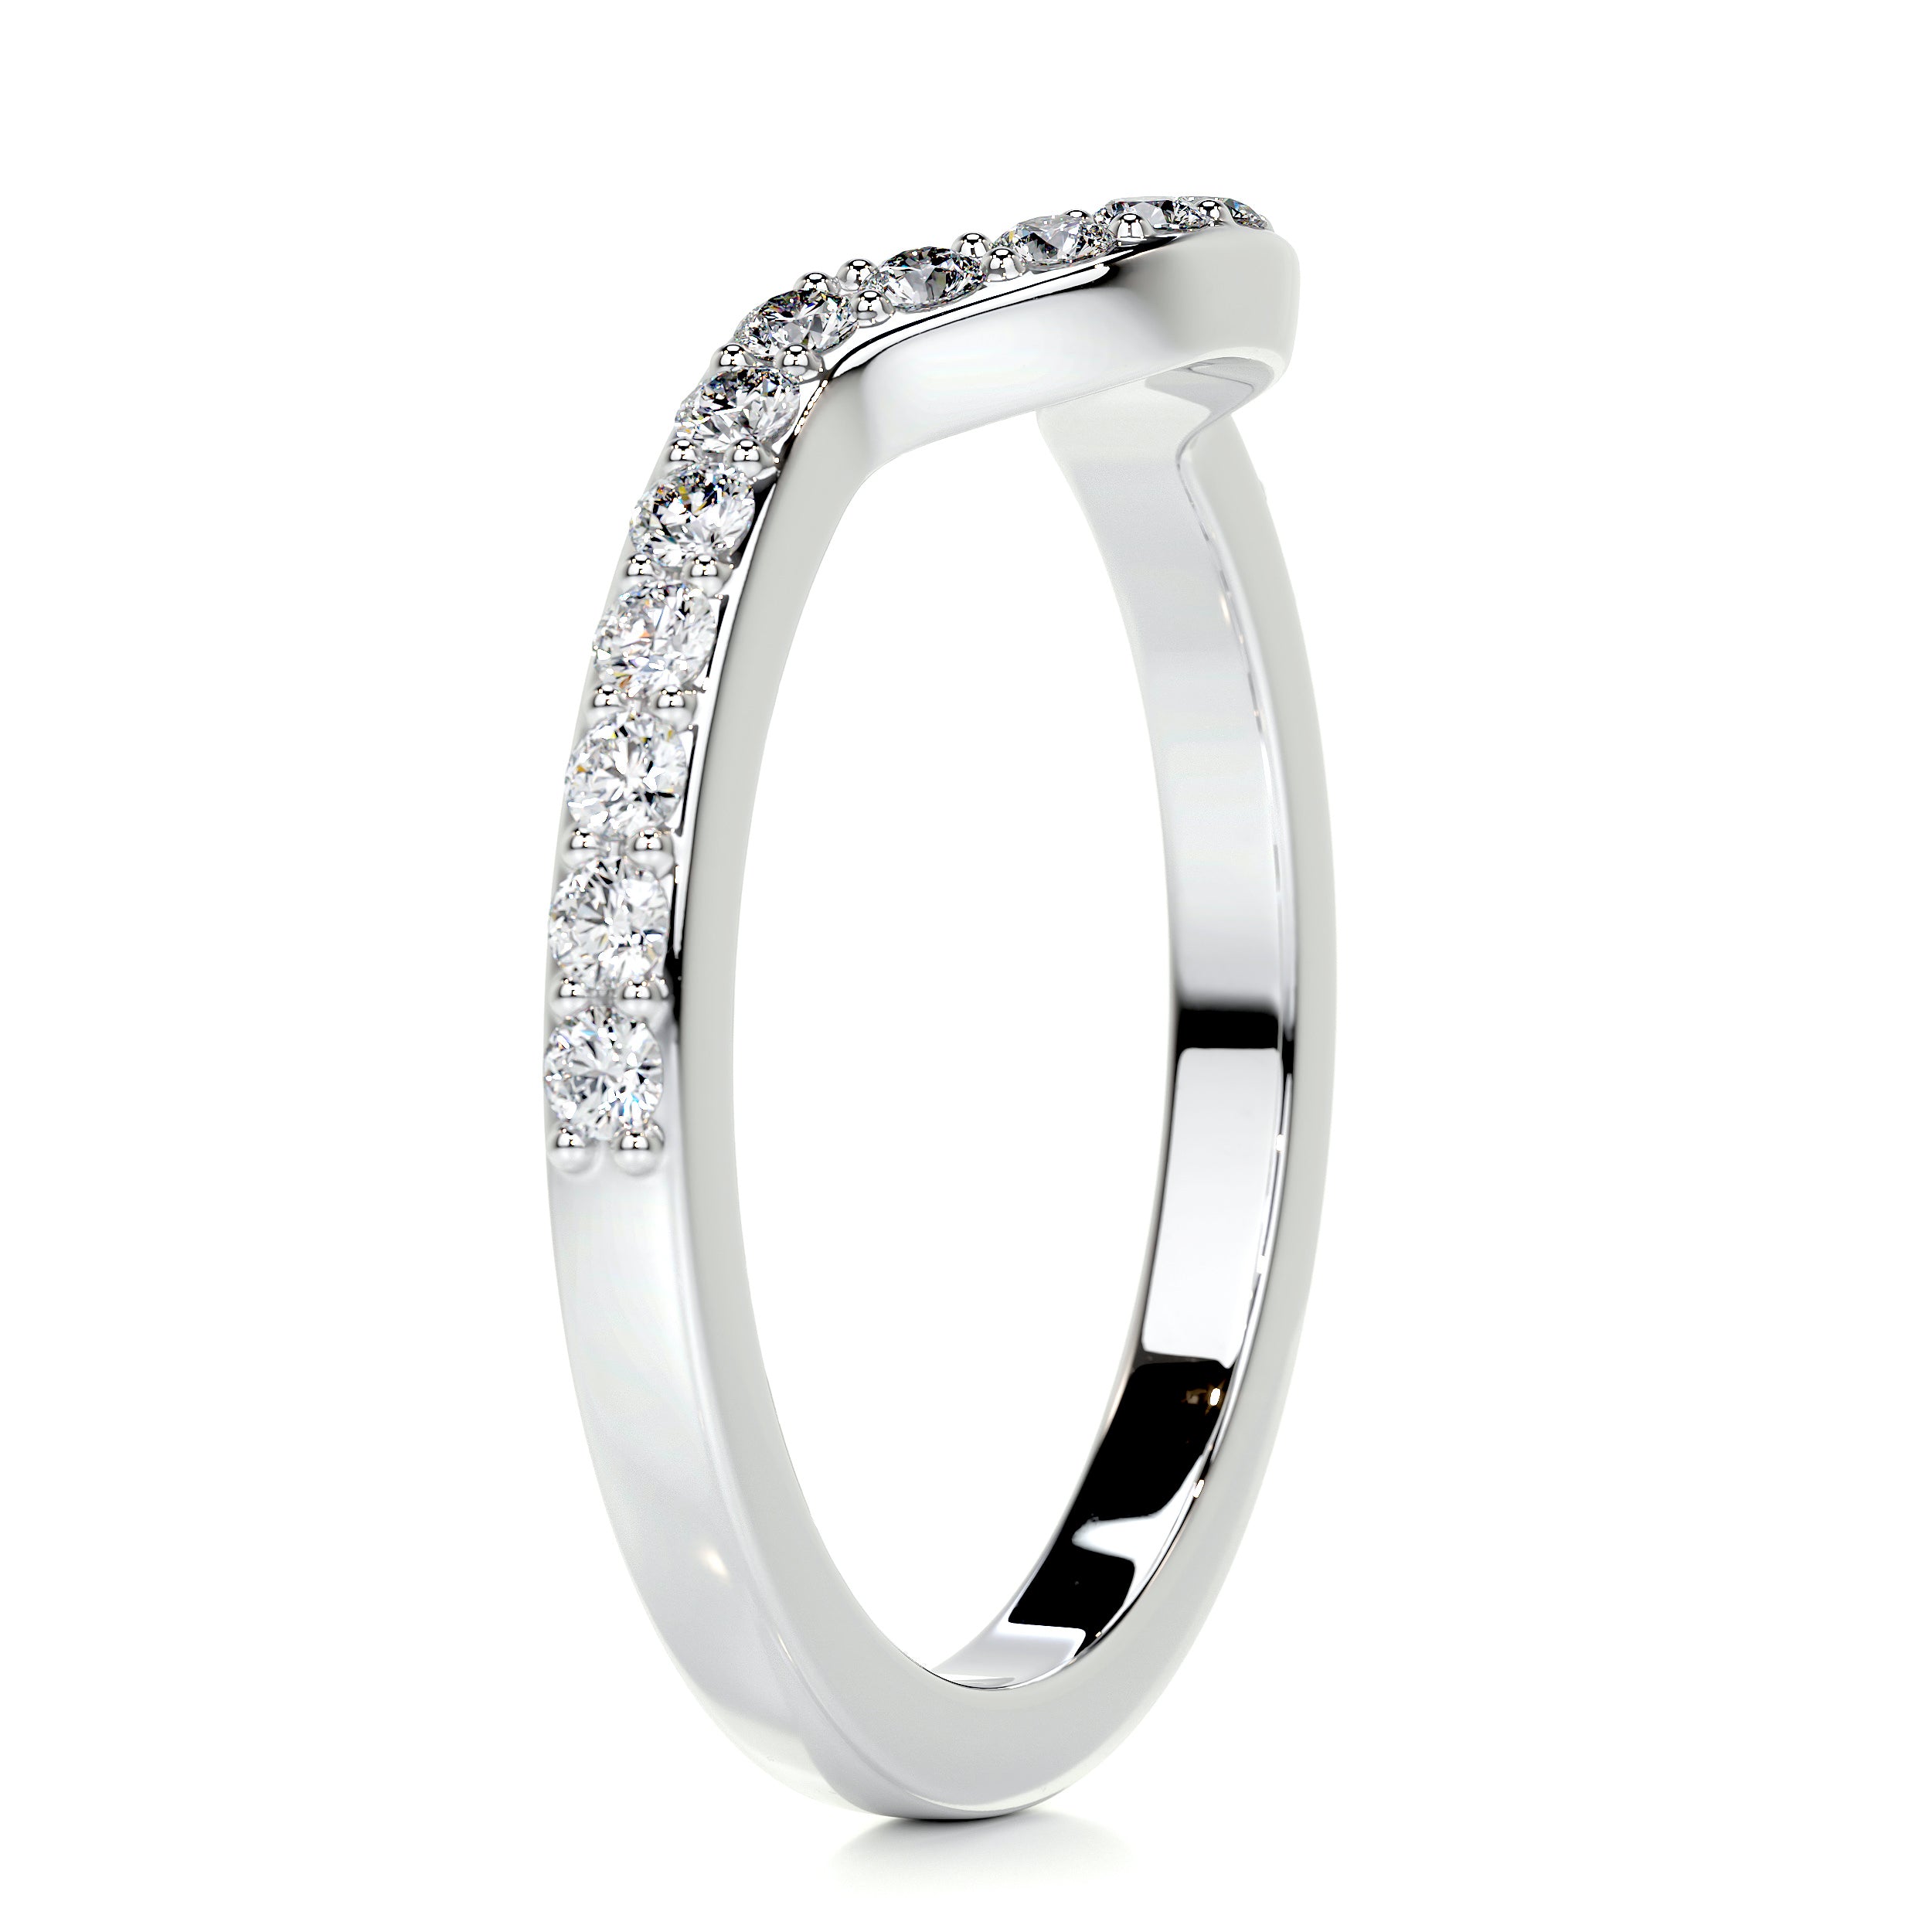 Nina Diamond Wedding Ring   (0.2 Carat) -Platinum